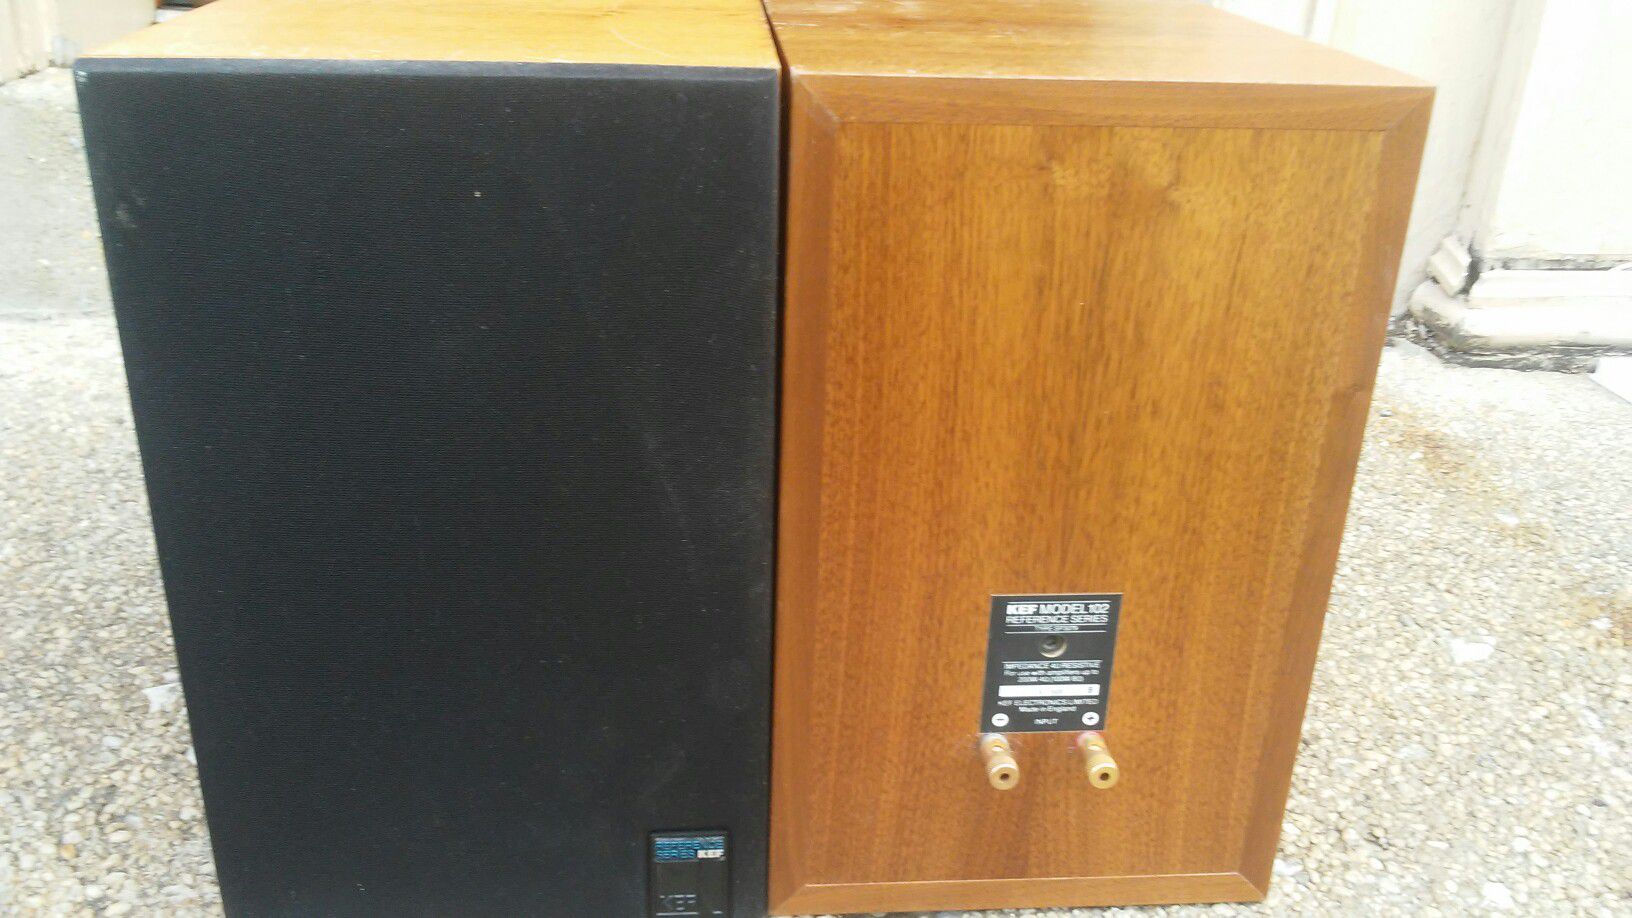 Kef Speakers model SP3079 made in England